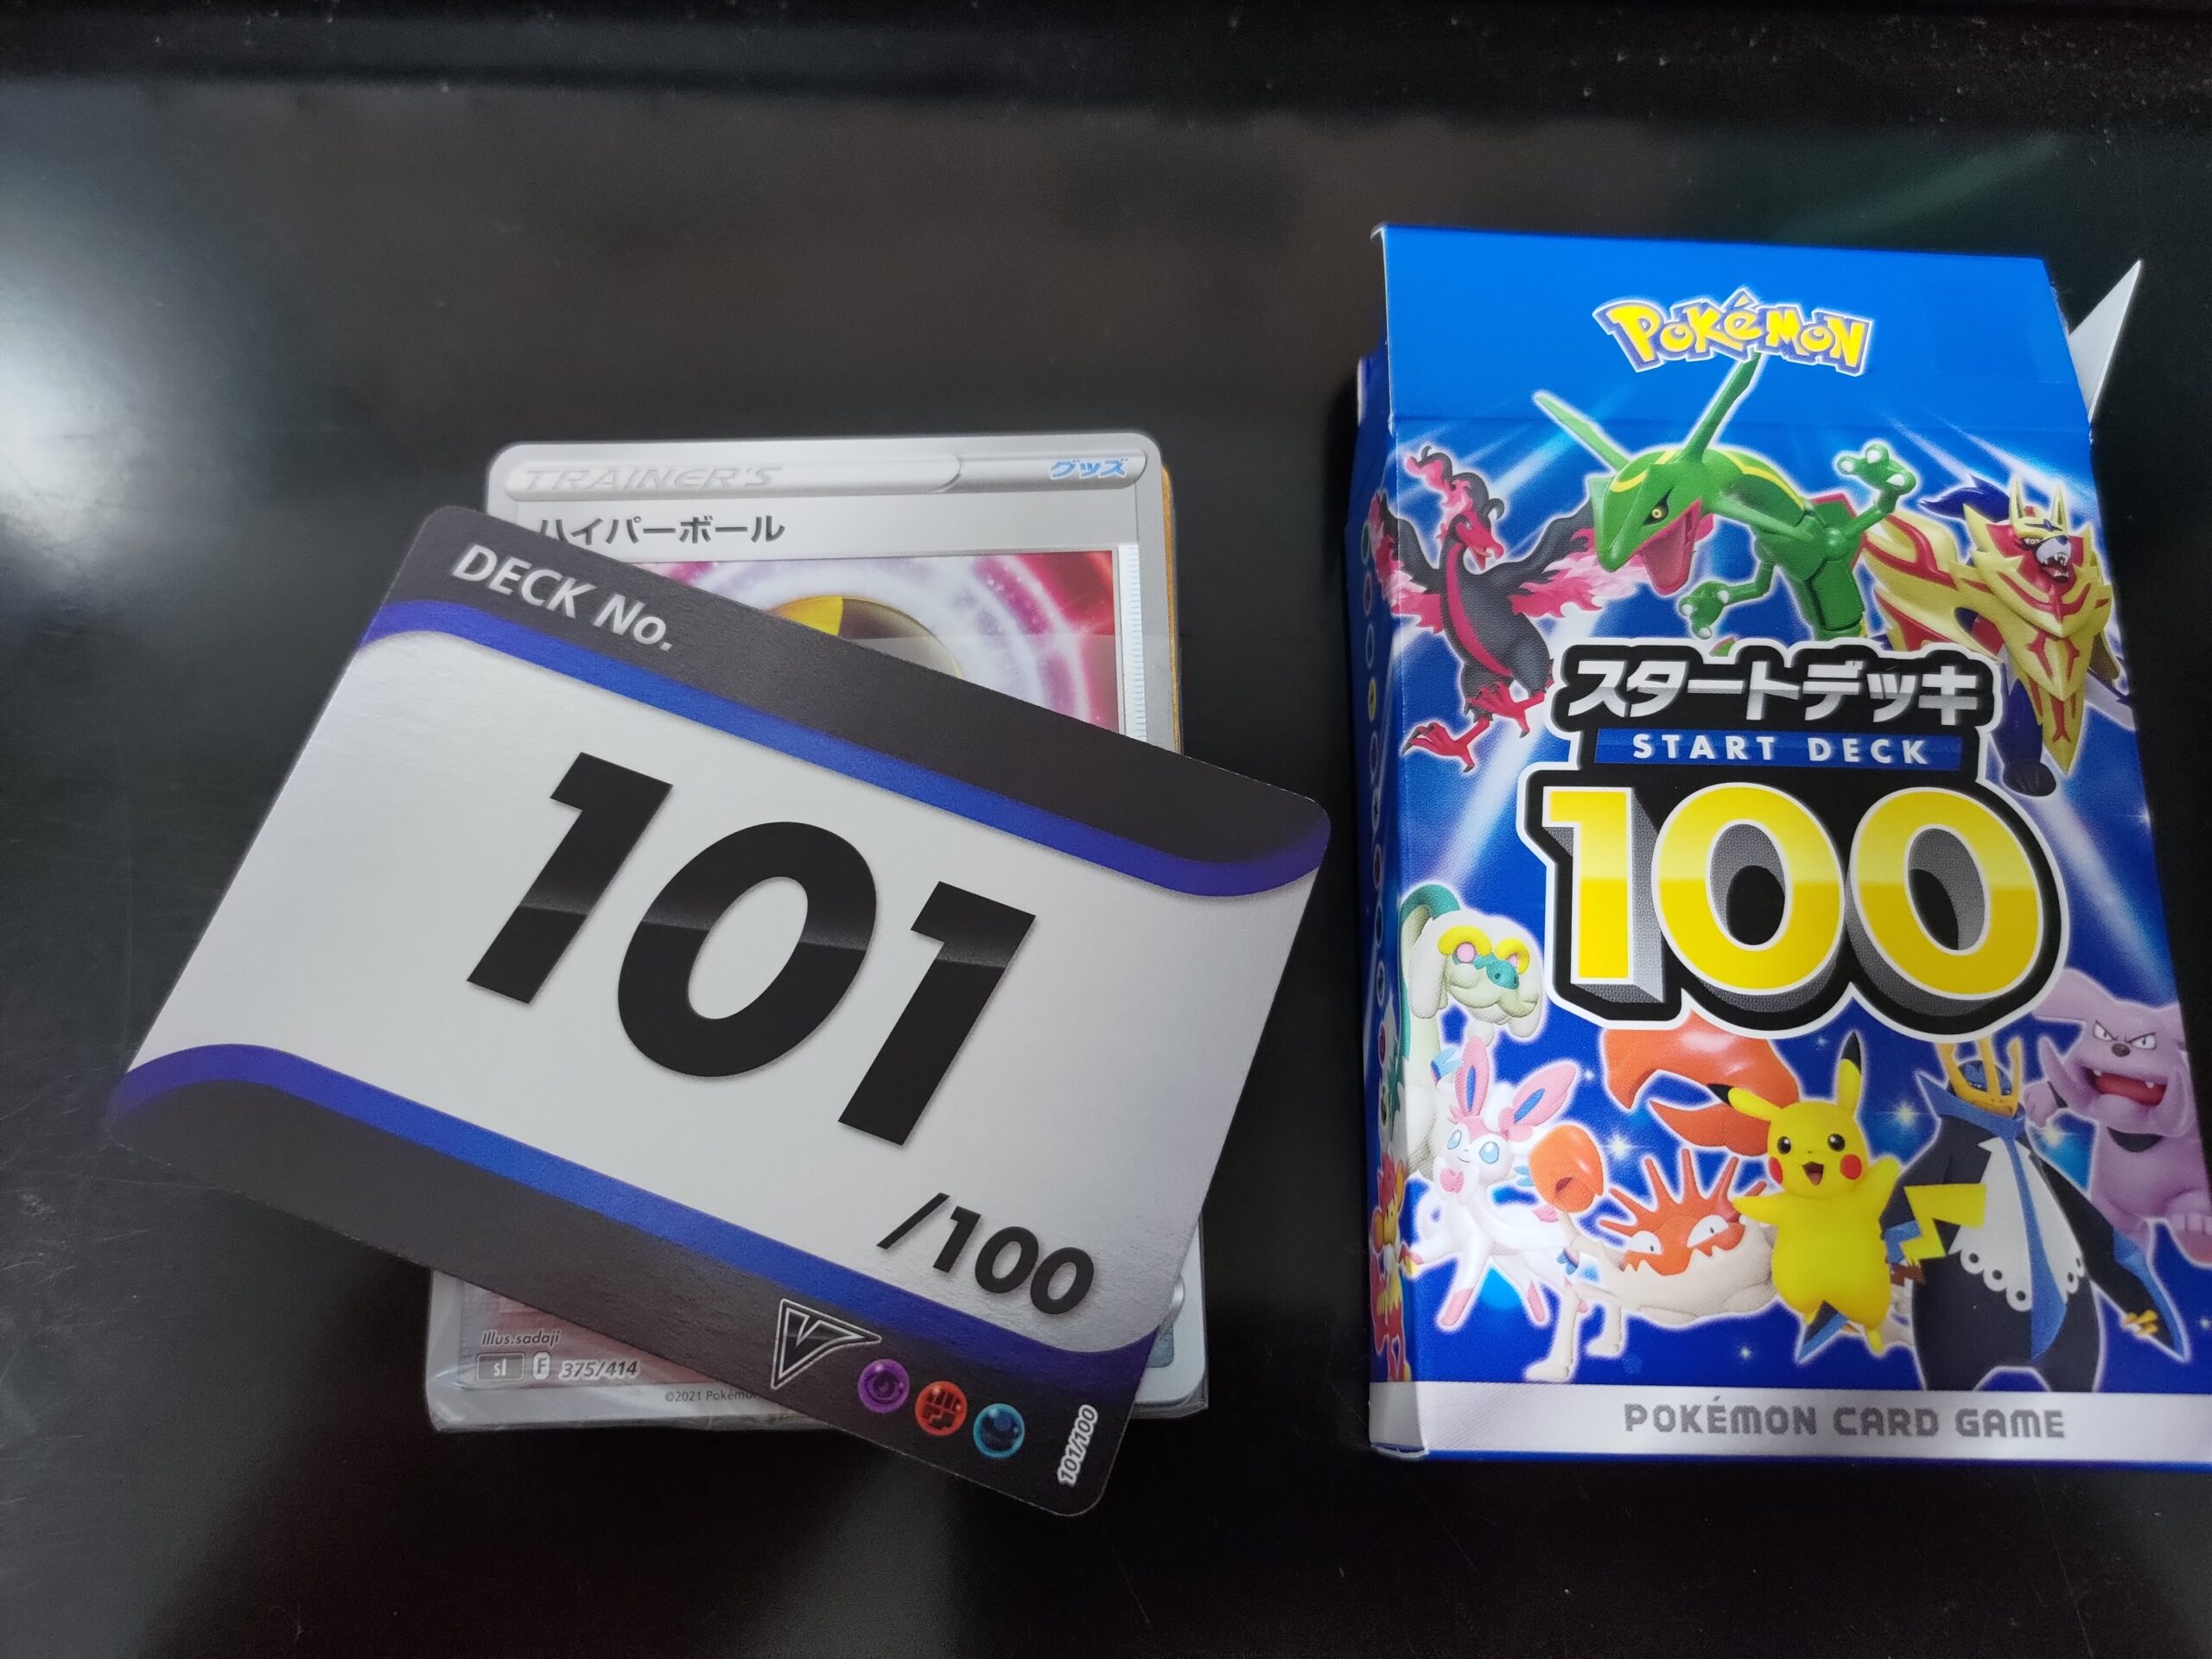 【楽天カード分割】 ポケモンカードゲーム スタートデッキ100 101番 ポケモンカードゲーム